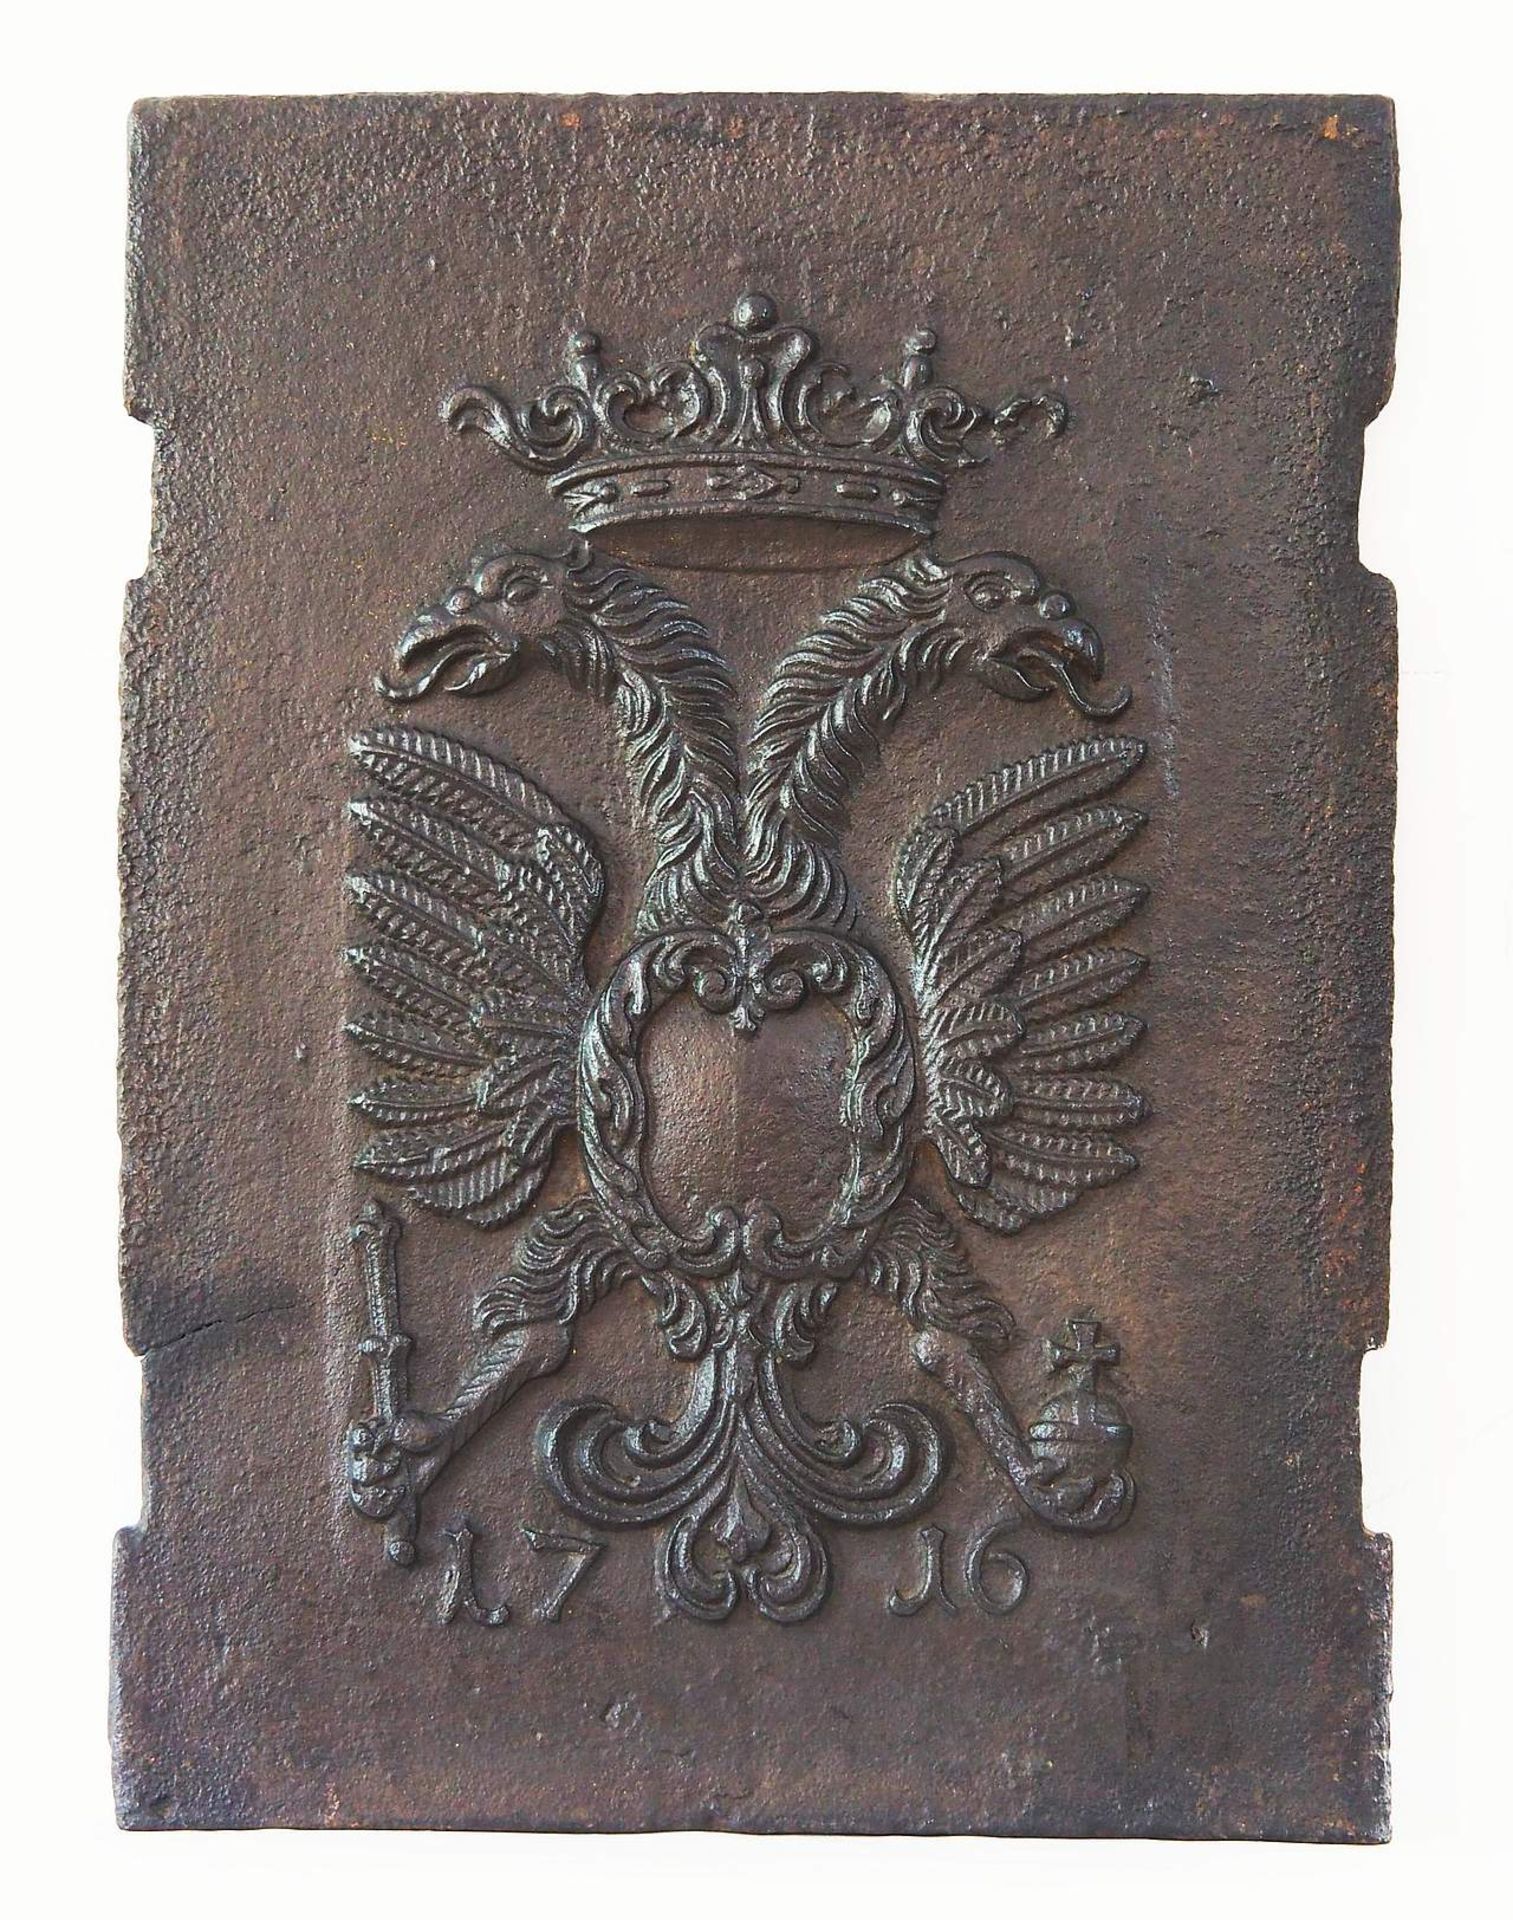 Gusseiserne Kaminplatte, bekrönter Doppeladler mit freier Kartusche, unten mit Jahreszahl 1716. - Image 2 of 5